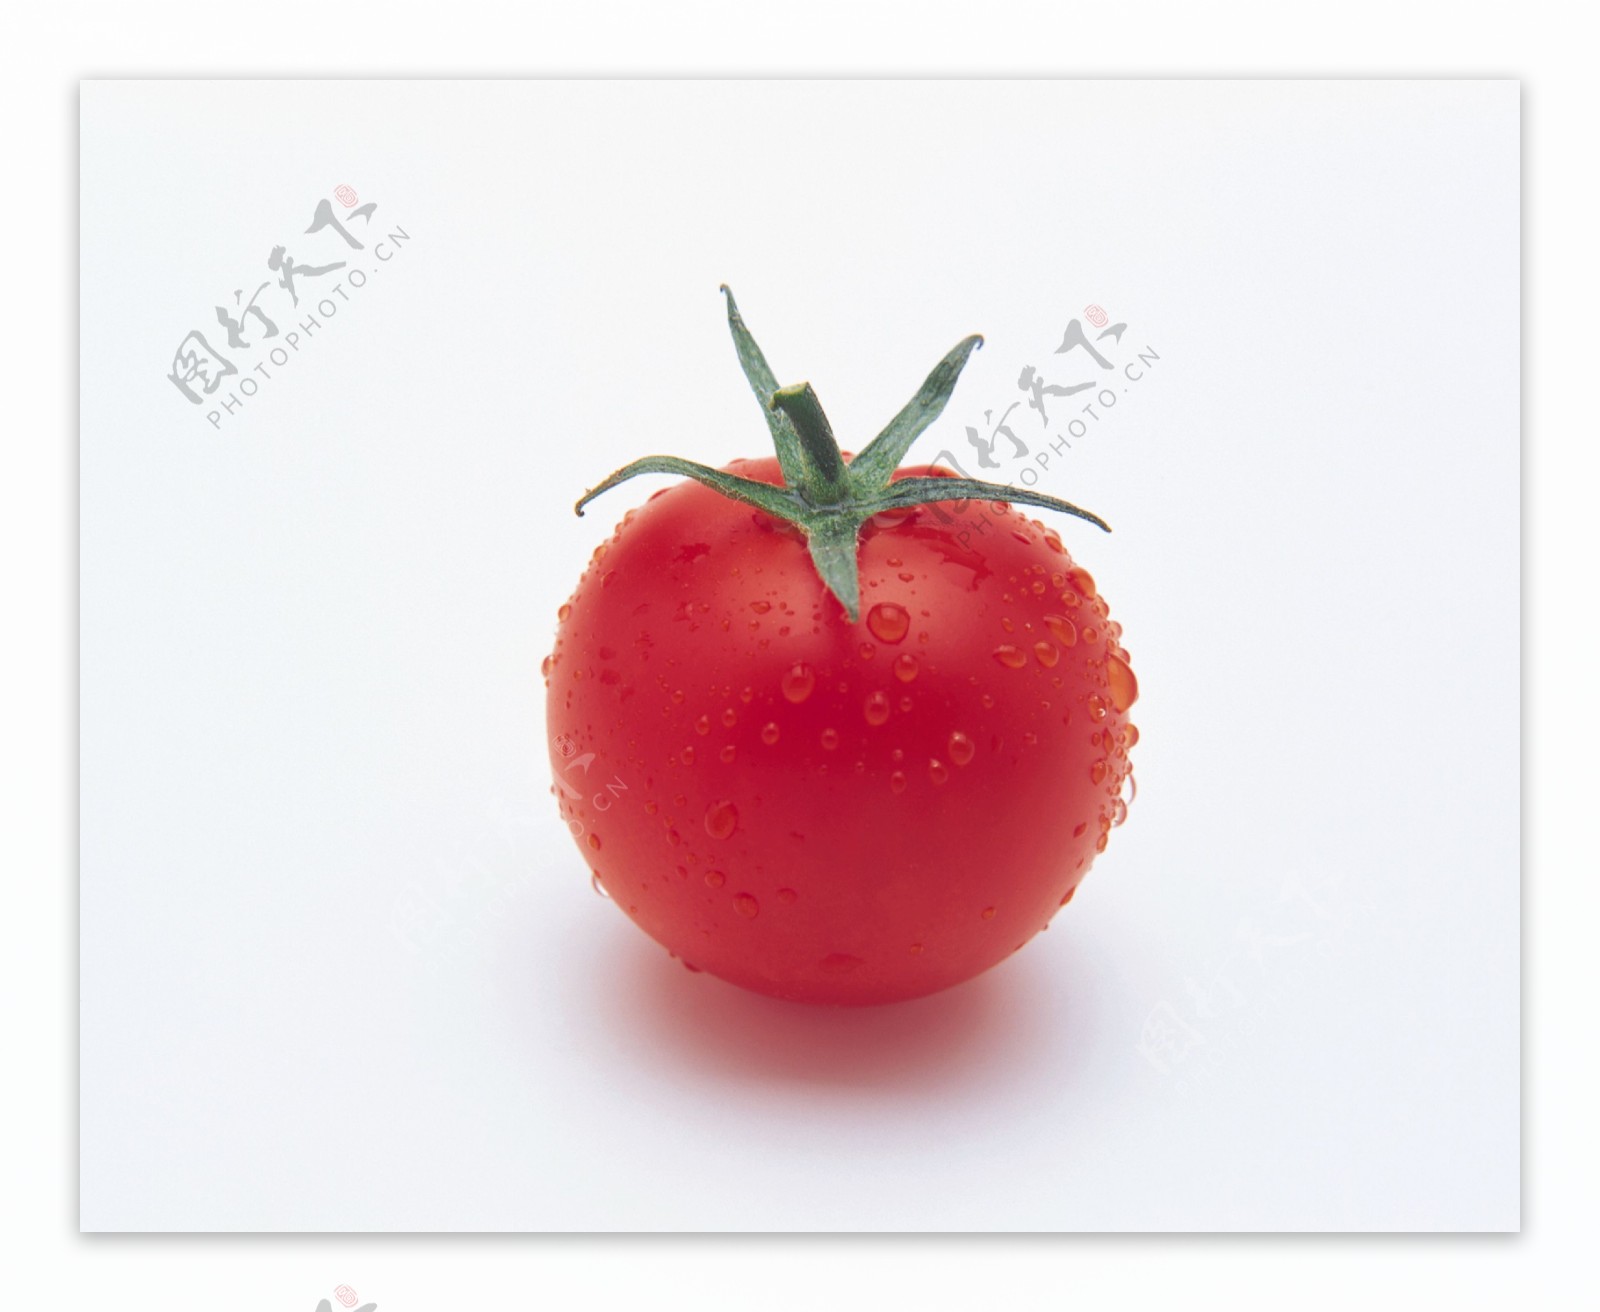 番茄图片